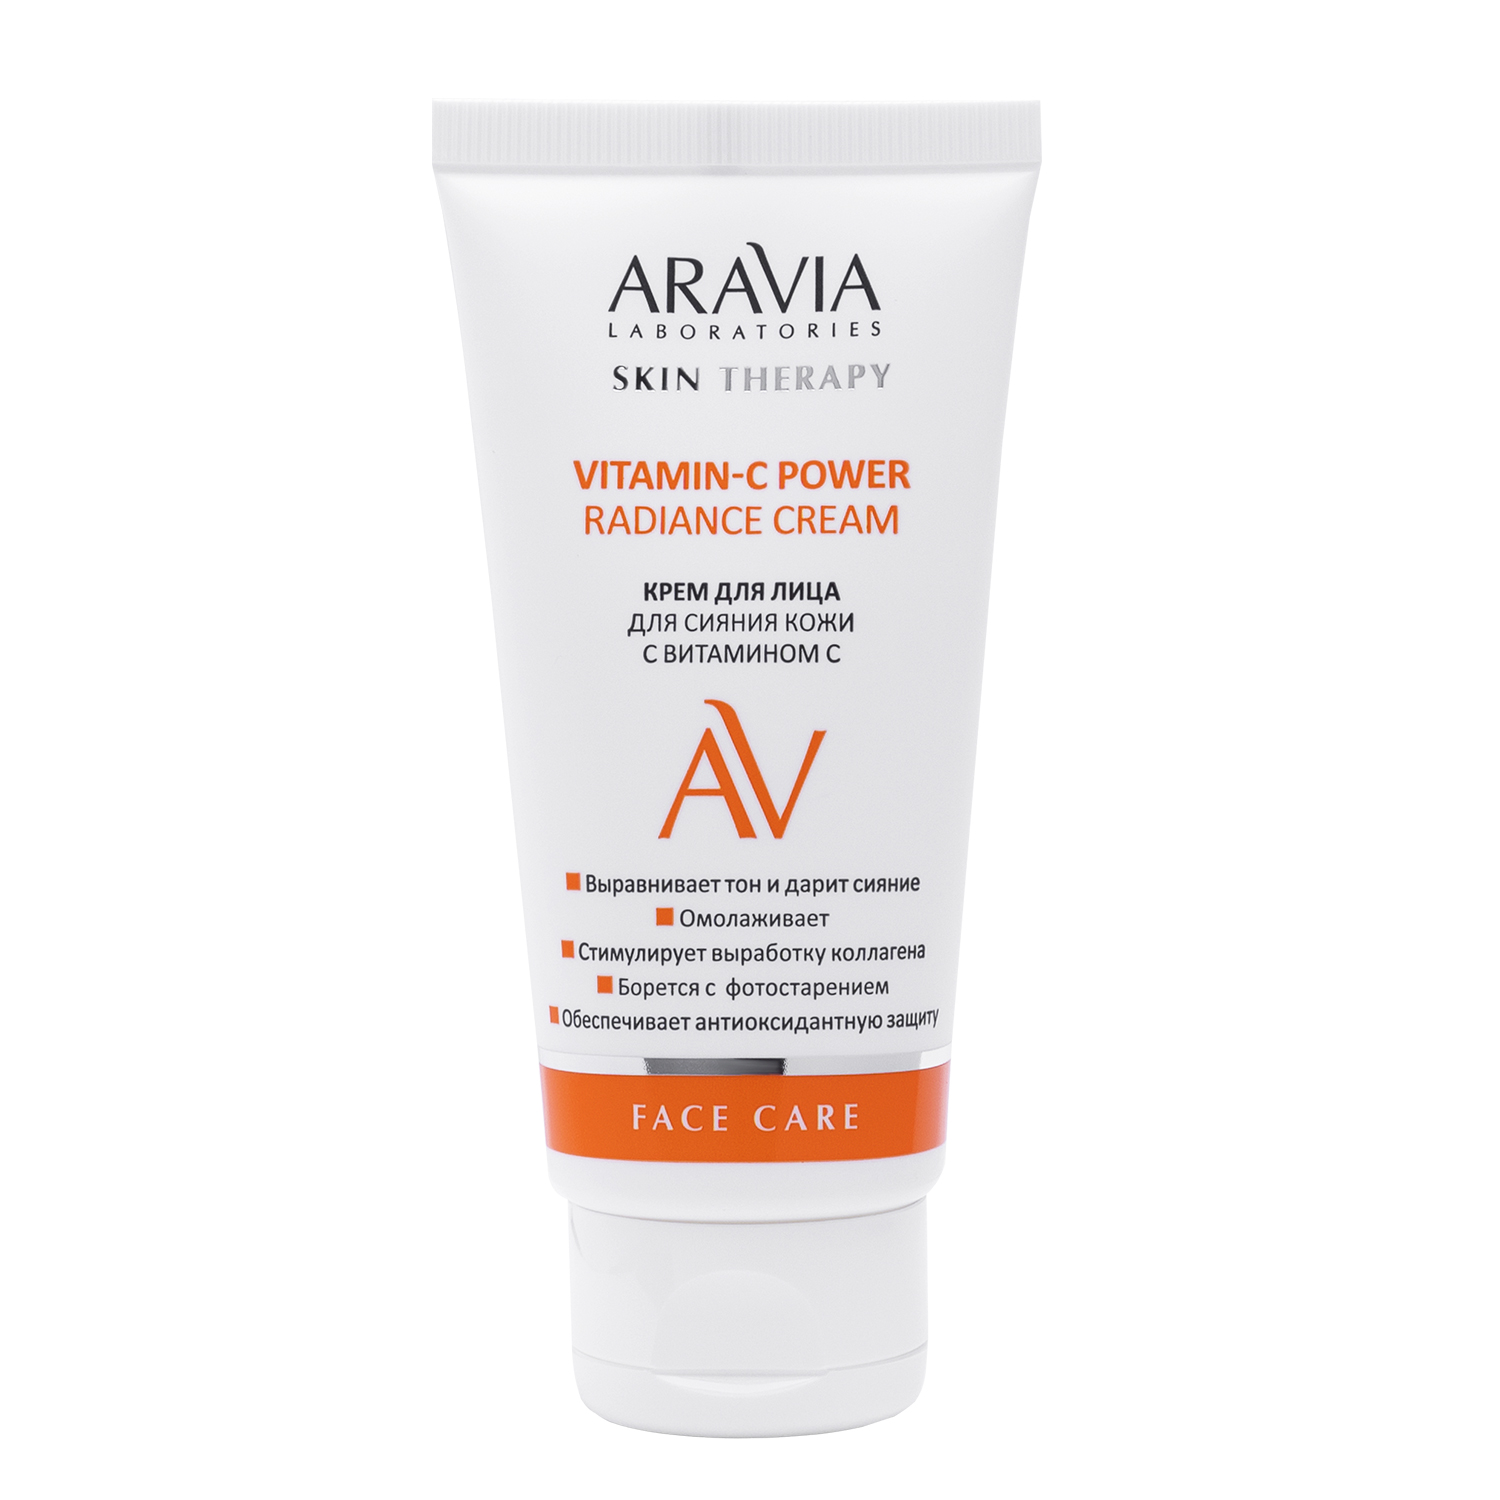 Крем Aravia Laboratories для лица сияние кожи 50 мл крем для лица nivea care для чувствительной кожи 100 мл